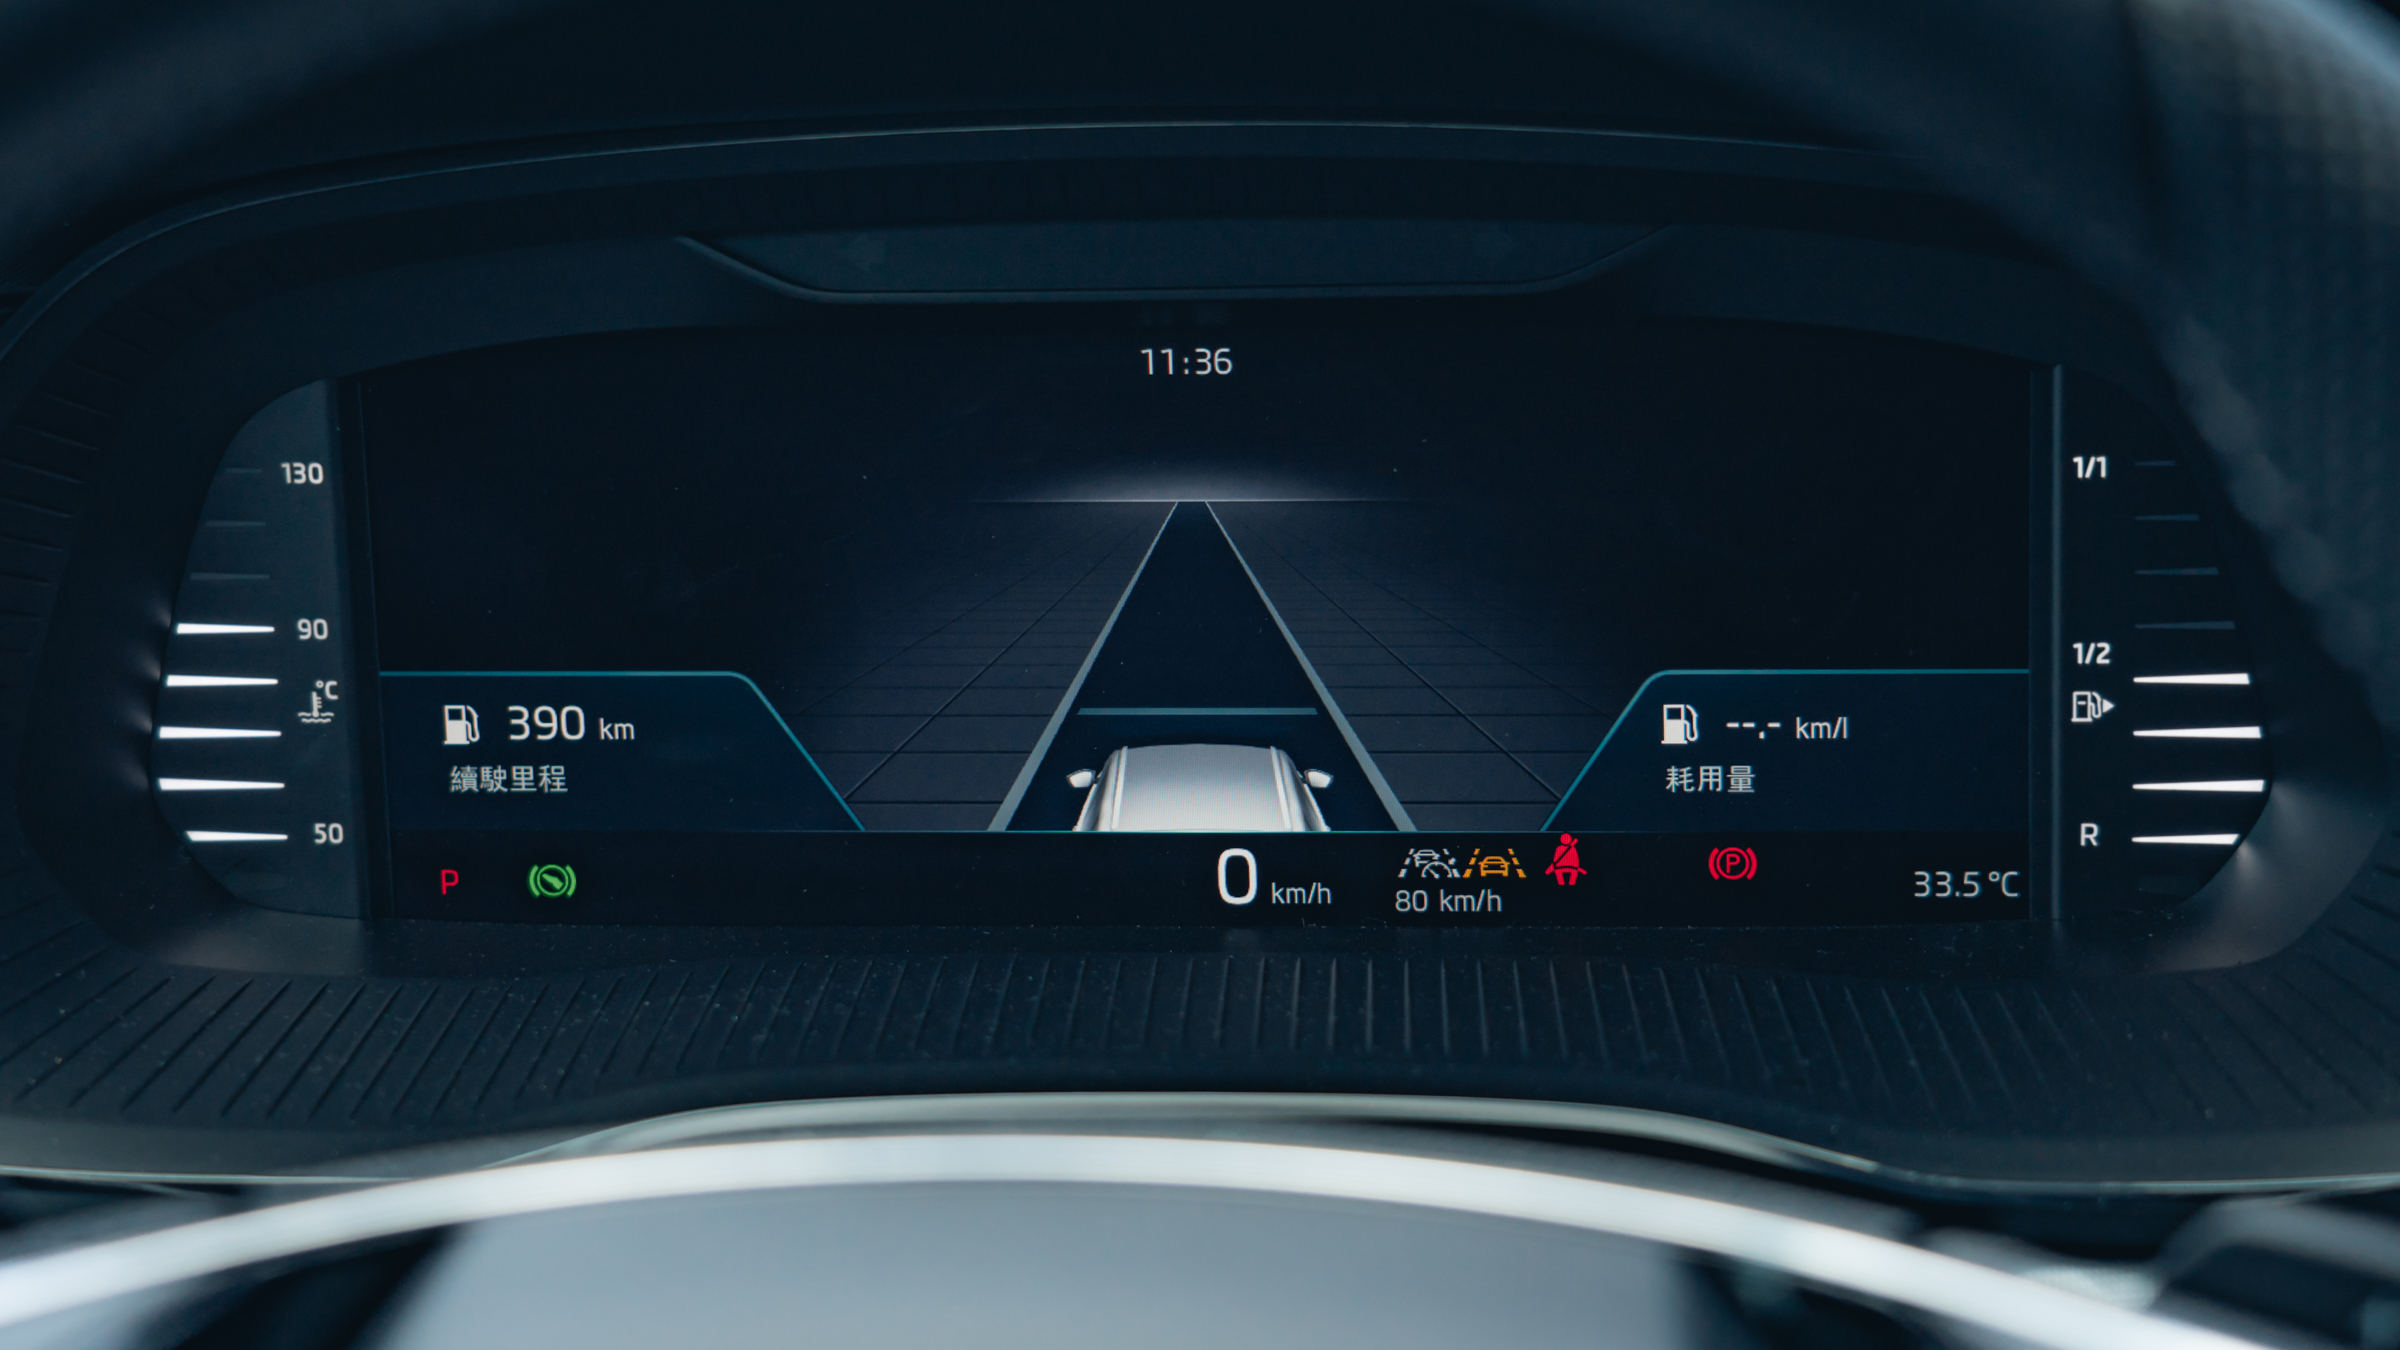 10.25吋全螢幕全彩數位儀表提供豐富的車輛資訊和顯示風格。